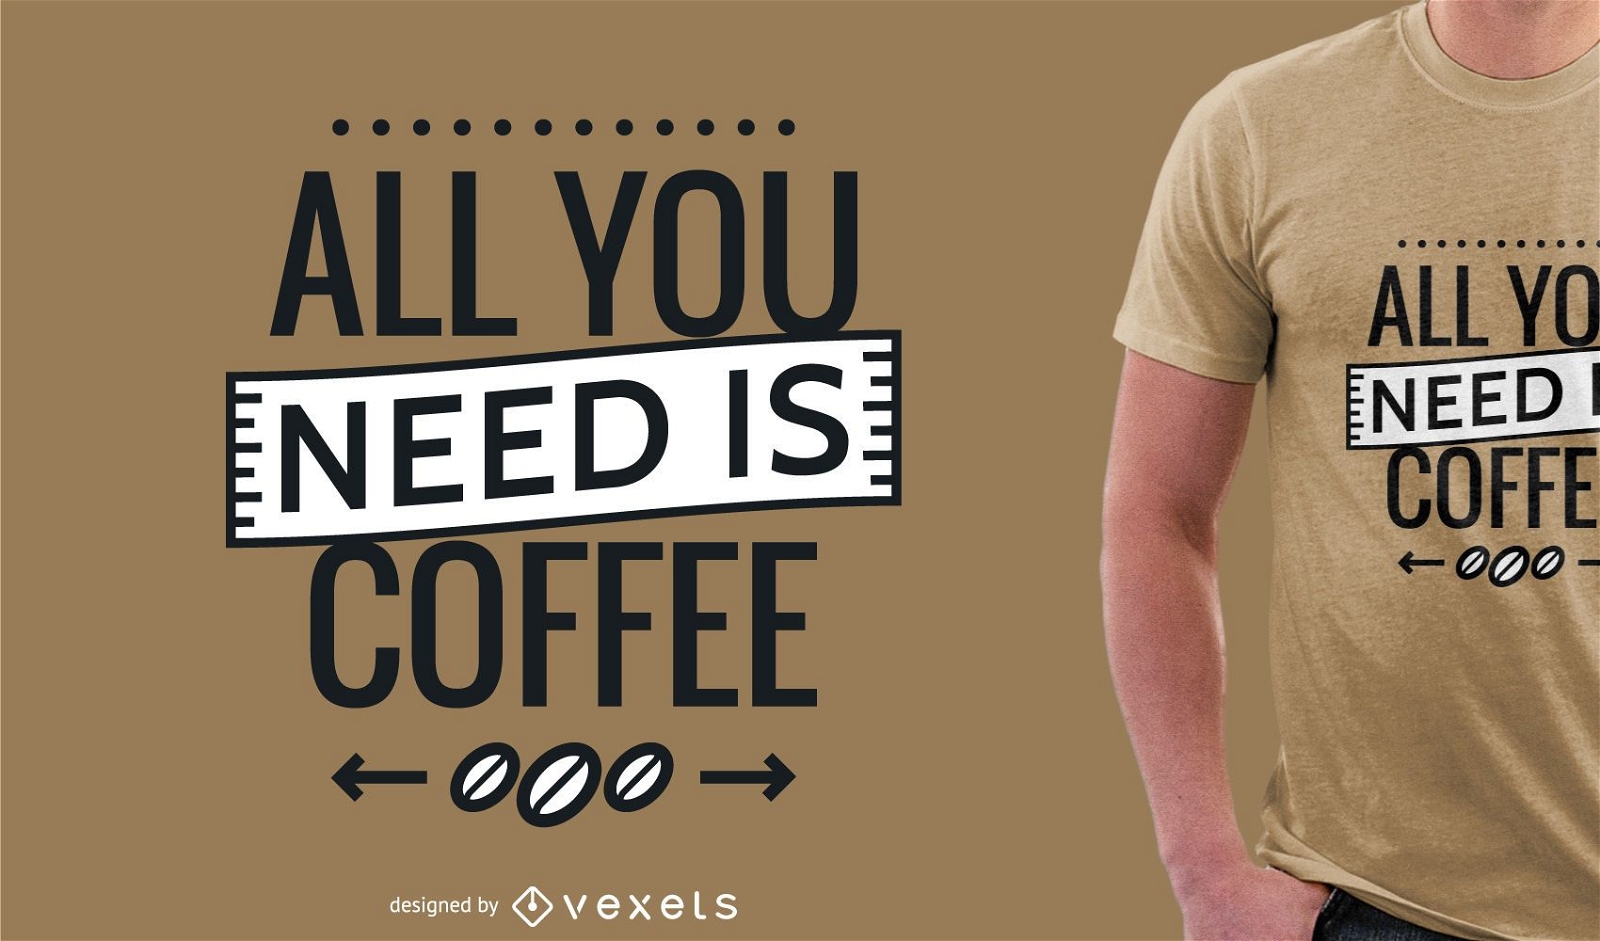 Todo lo que necesitas es dise?o de camiseta de caf?.